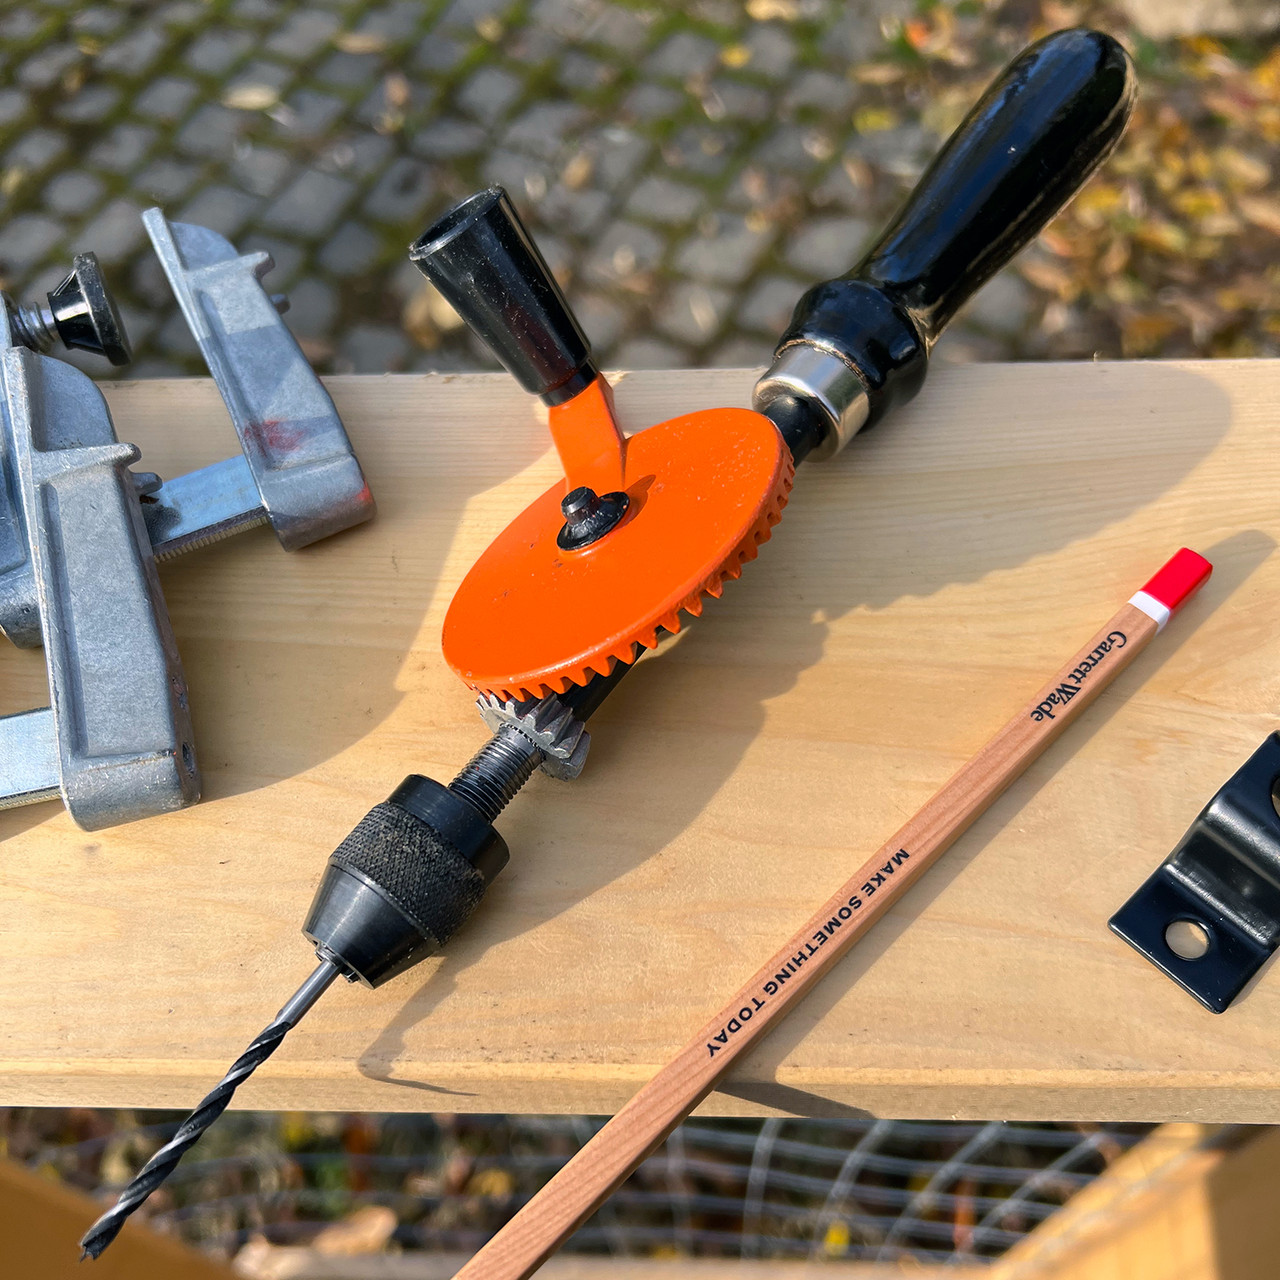 Tool Review: Schröder 9 Hand Drill - Make